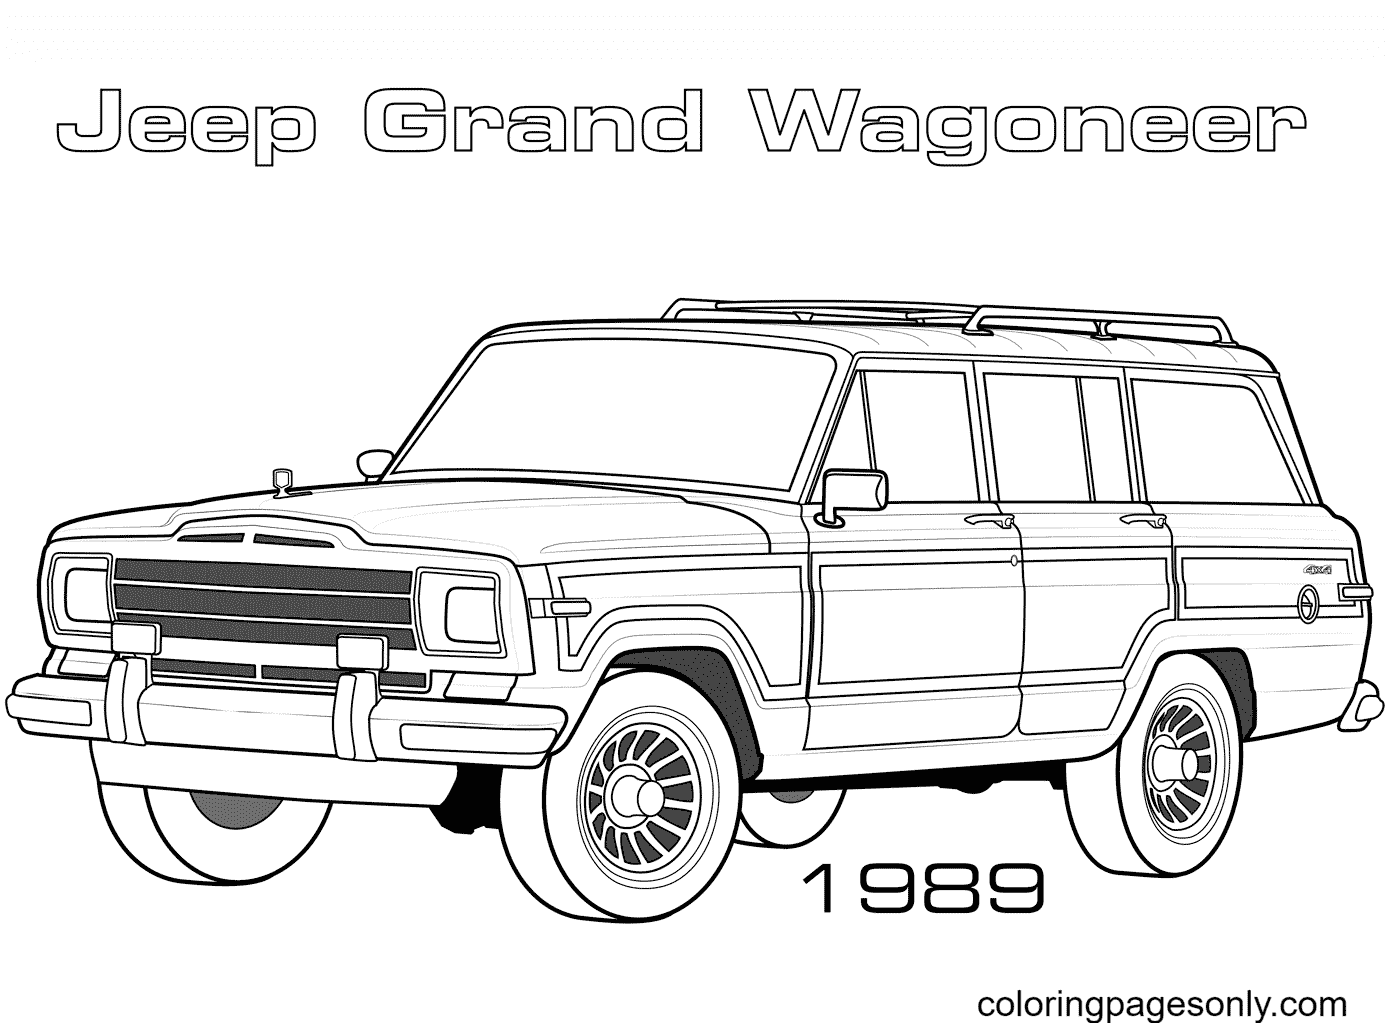 Jeep Grand Wagoneer del 1989 della Jeep